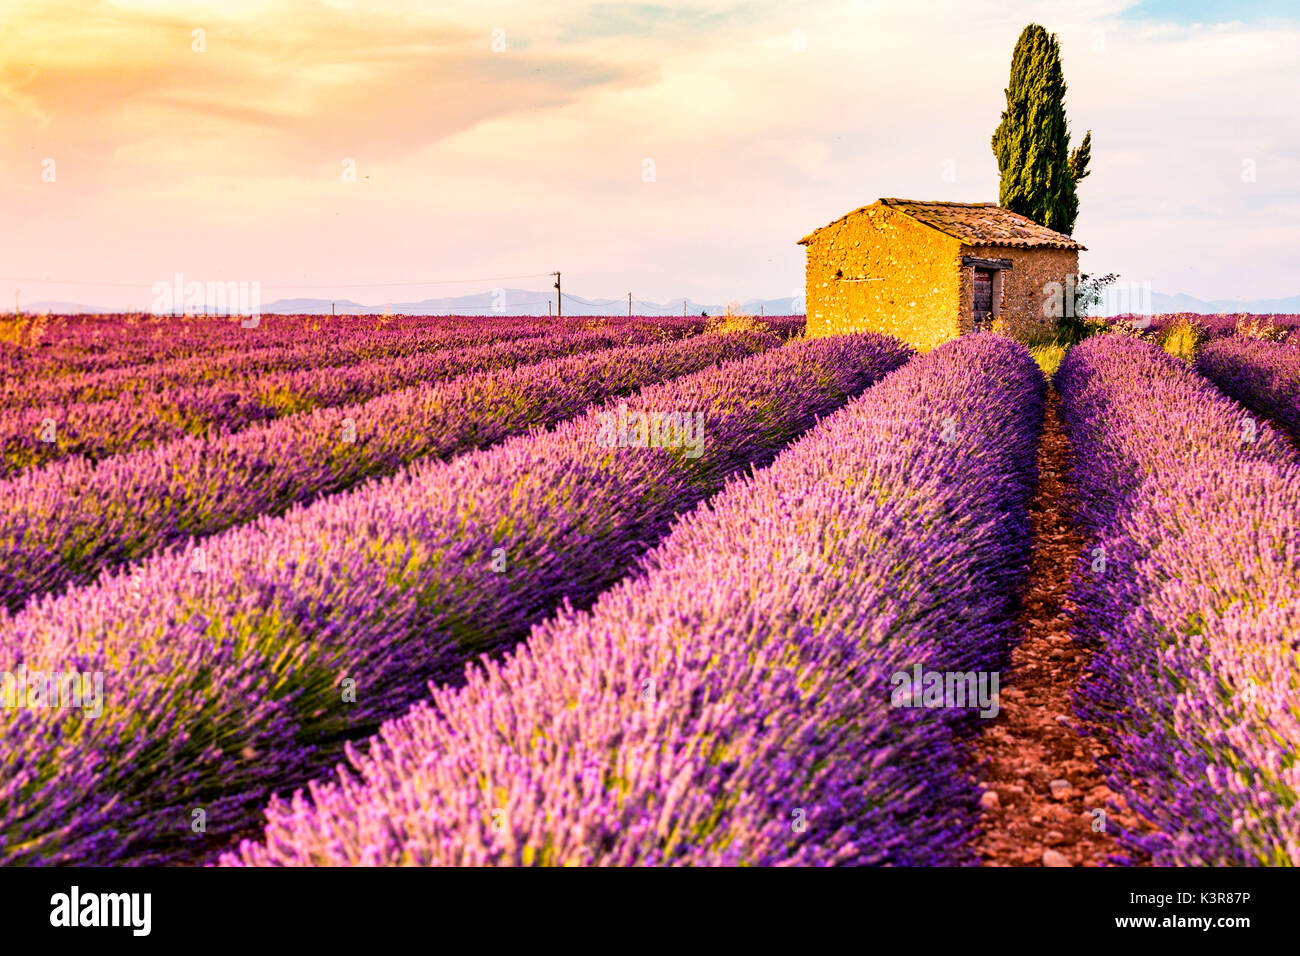 Provence, Plateau von Valensole, Frankreich, Europa. Einsame Bauernhaus und Zypressen Baum im Sonnenaufgang mit Sunburst, Lavendel Feld in voller Blüte. Stockfoto